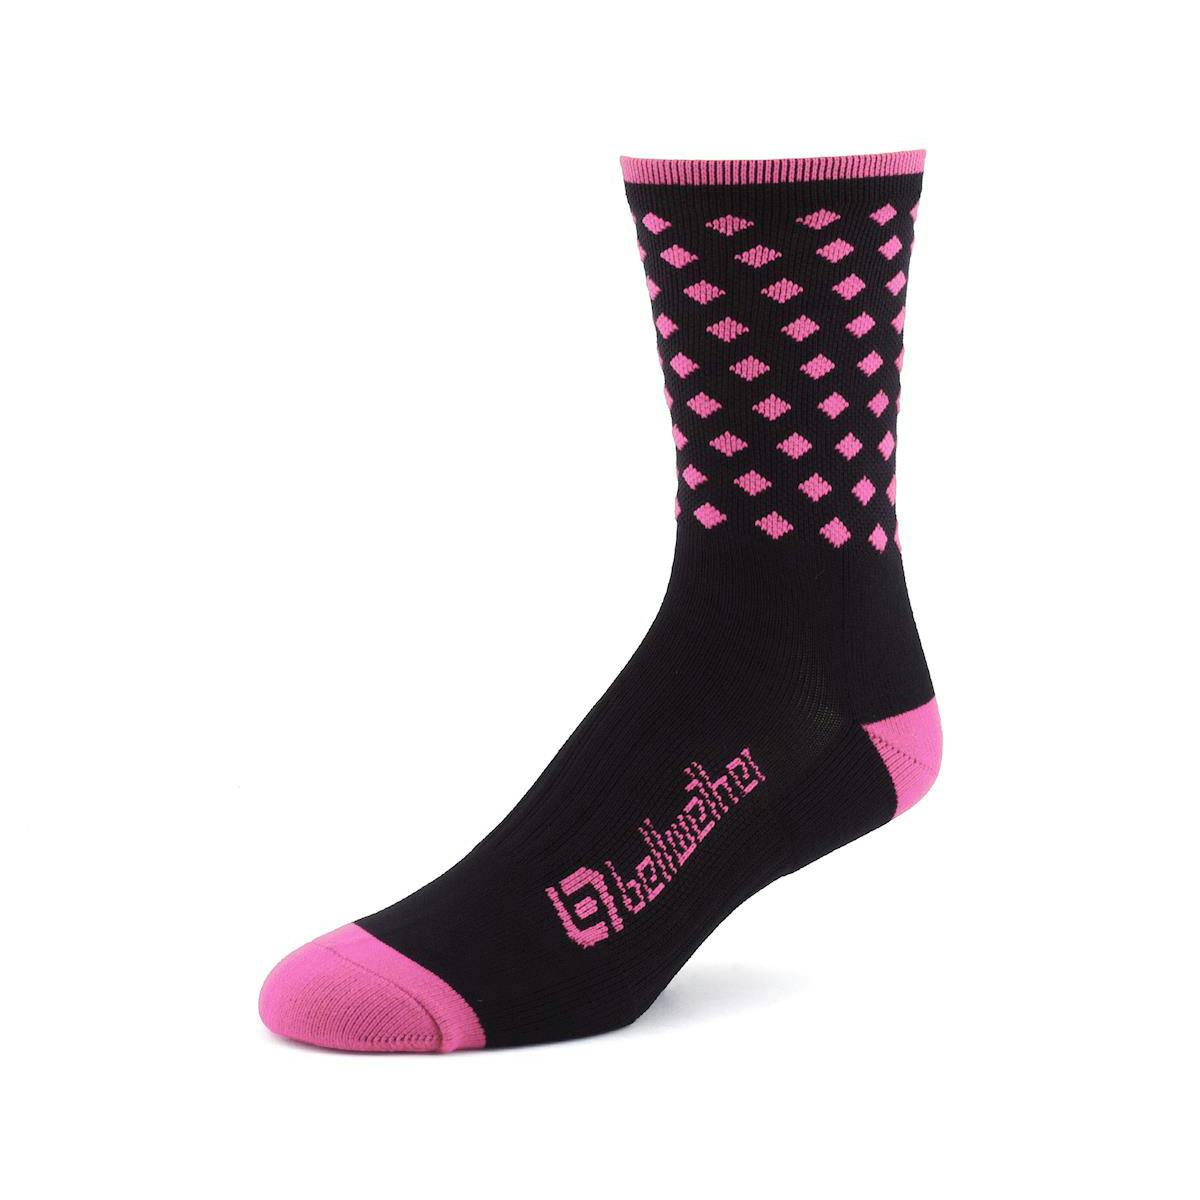 Bellwether Pinnacle Socks - Pink - Medium